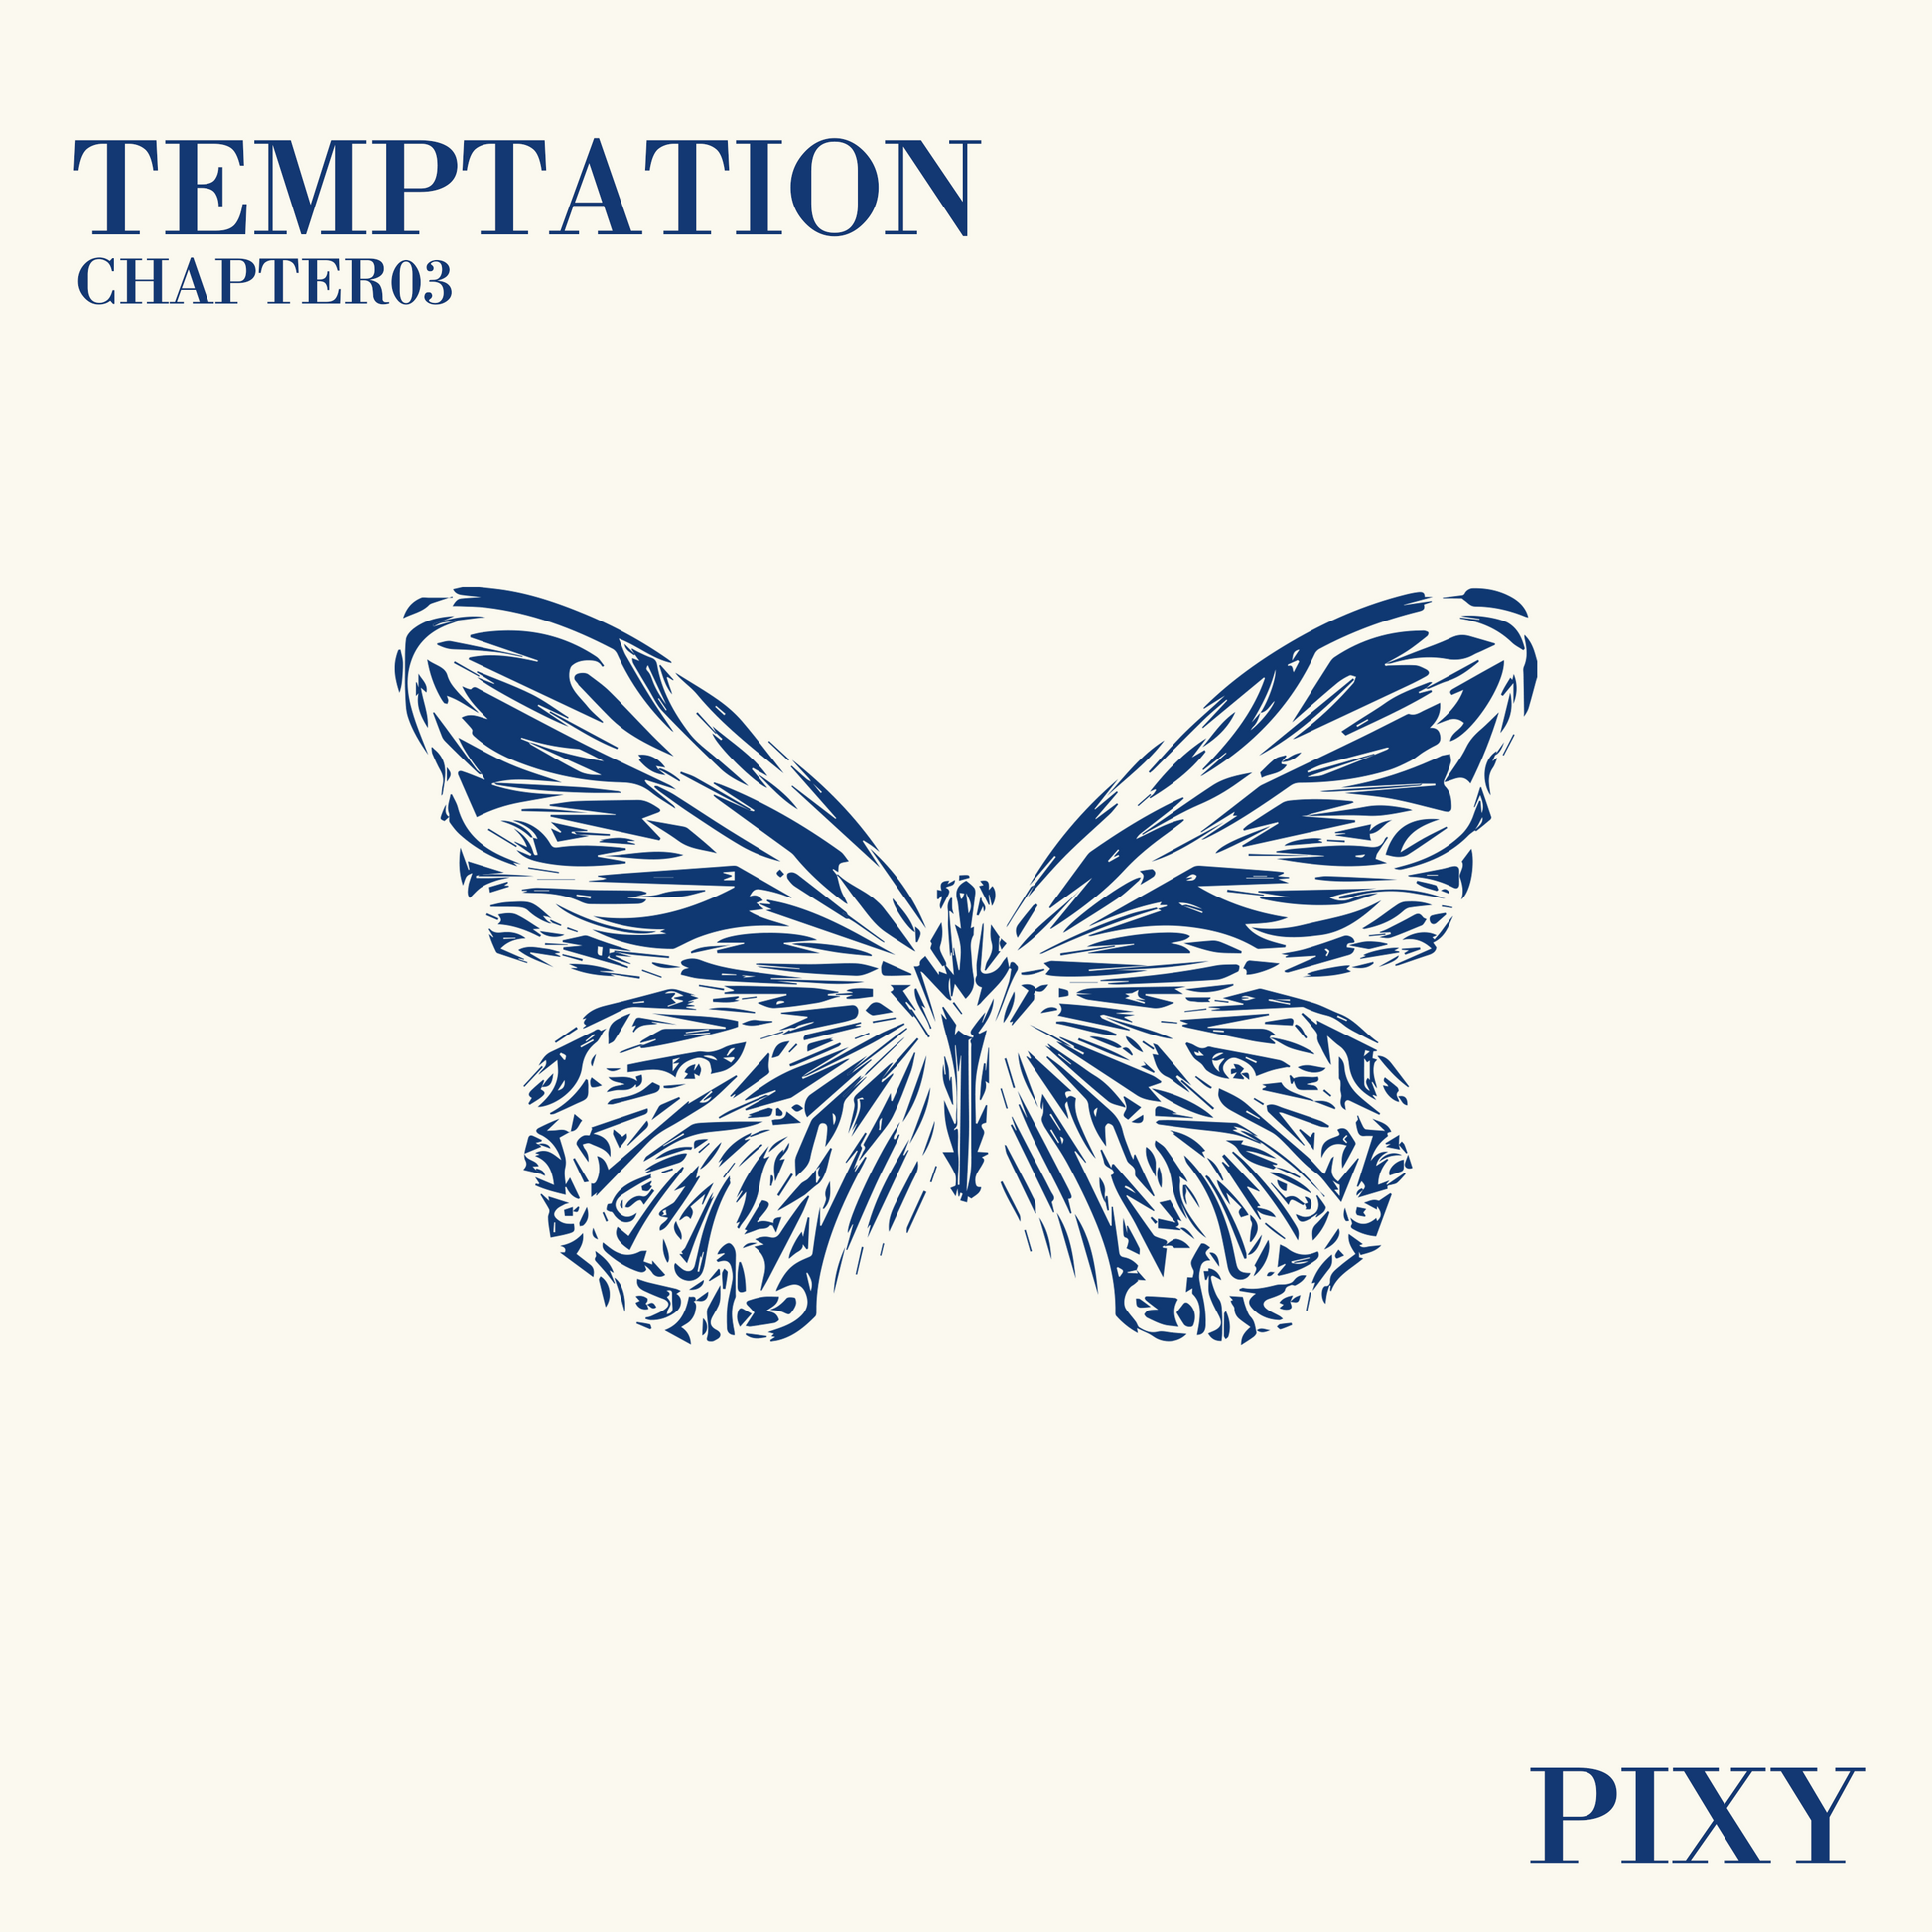 PIXY 2ND MINI ALBUM 'TEMPTATION' COVER